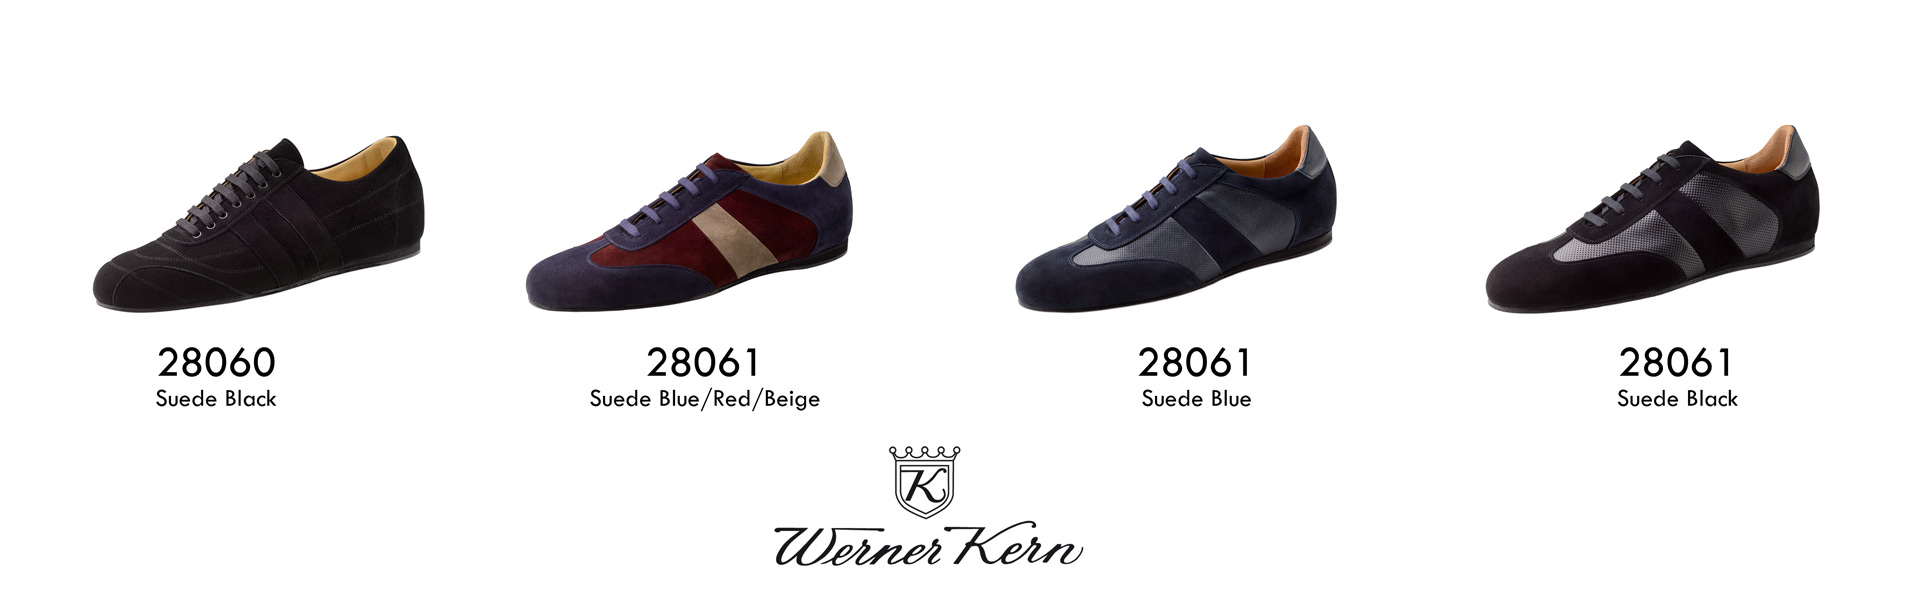 Werner Kern Dance Shoes 28060 28061